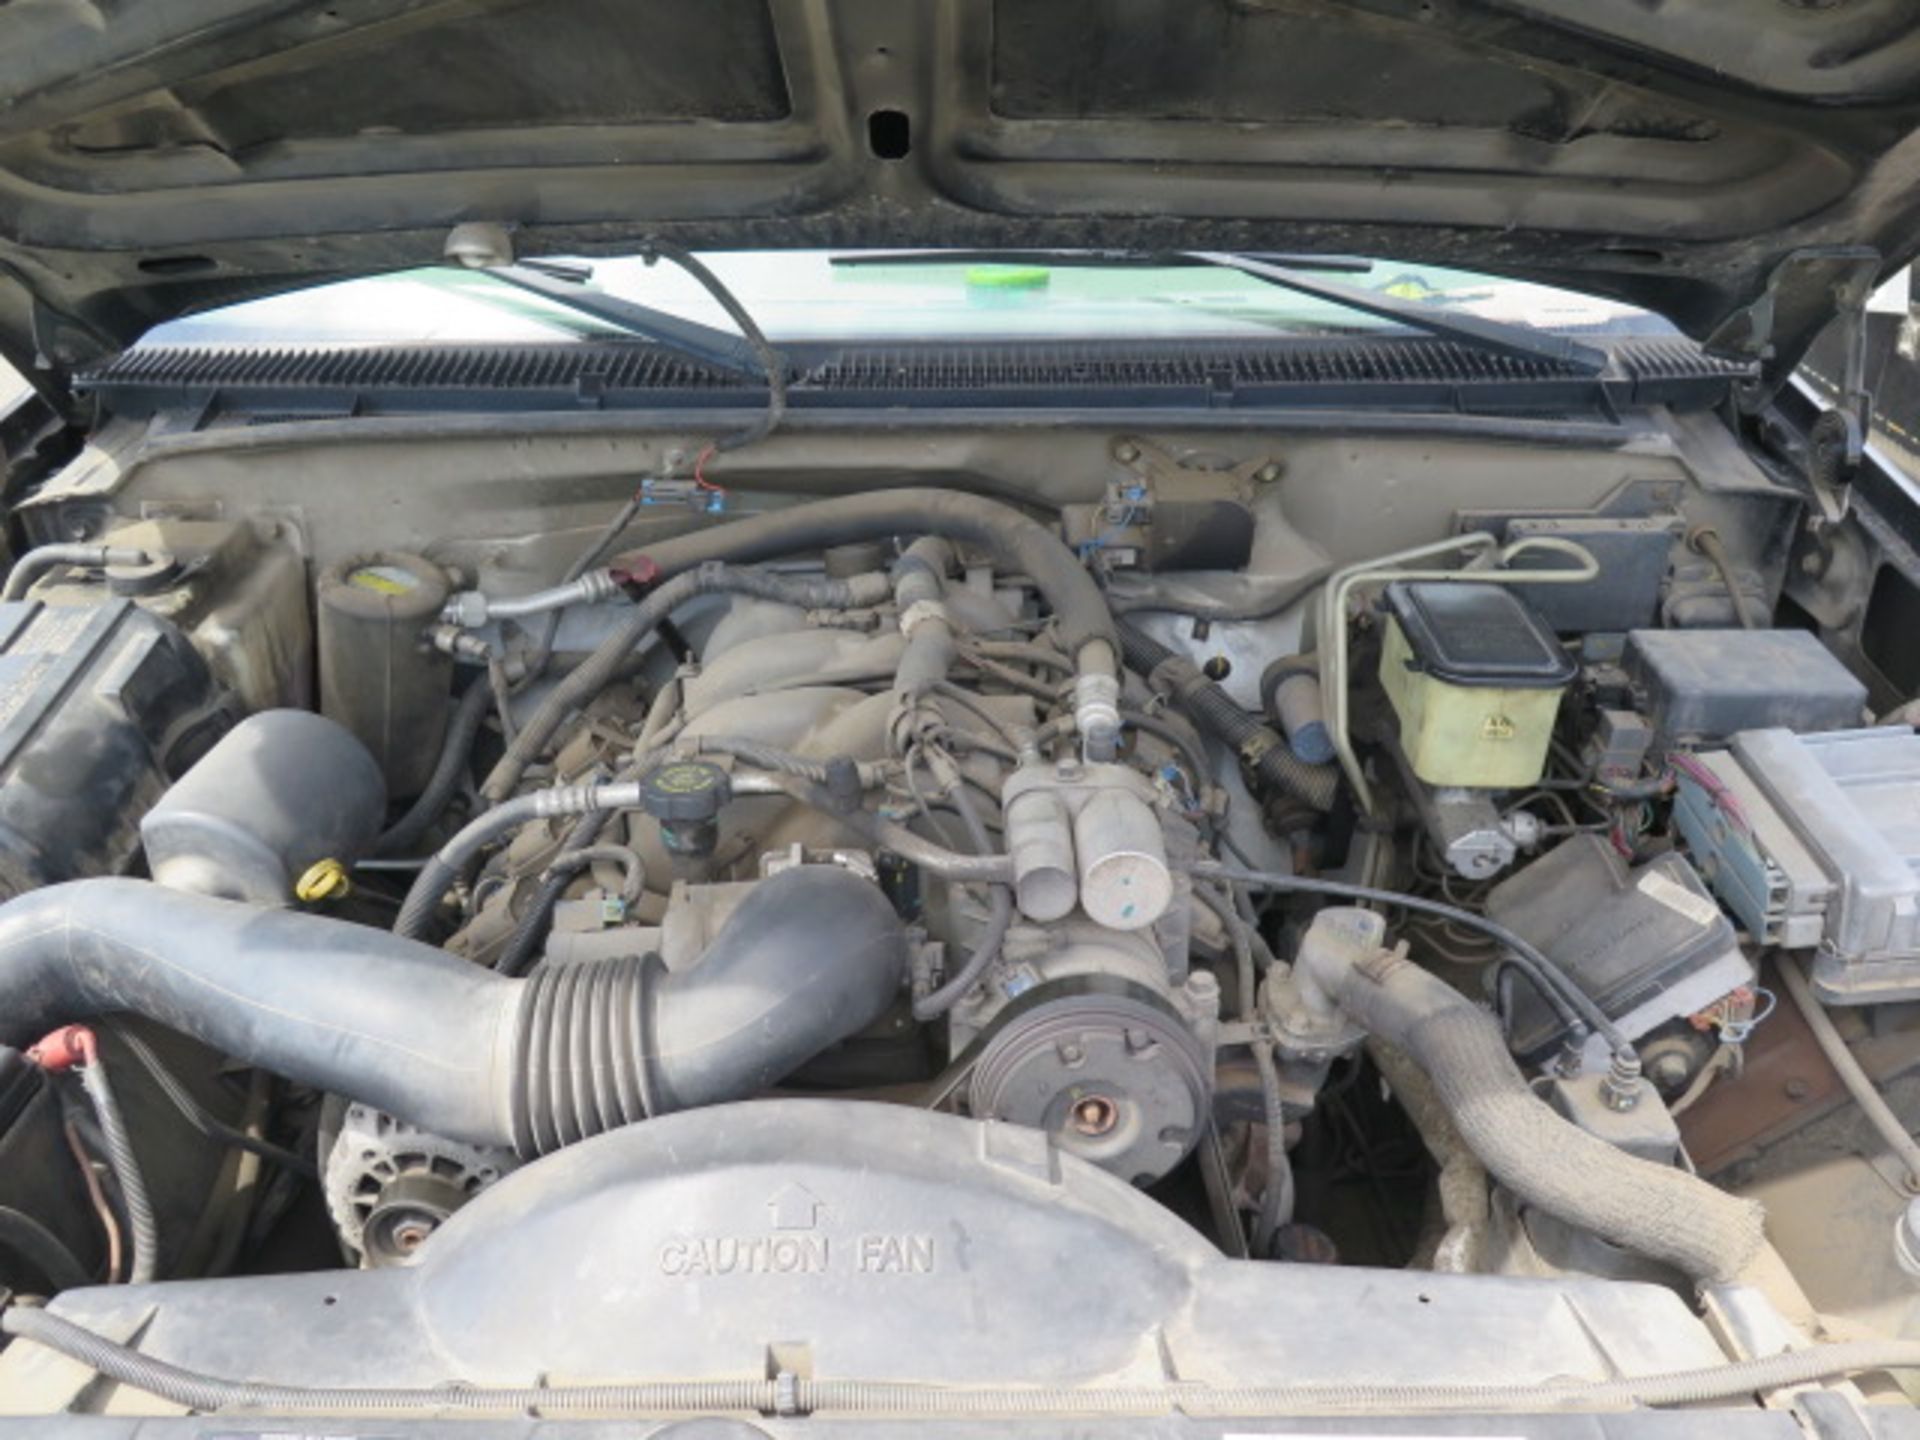 2001 Chevrolet Silverado 3500HD Welding Utility Truck Lisc# 6U26651 w/ 8.1L V8 Gas Engine, Automatic - Image 15 of 19